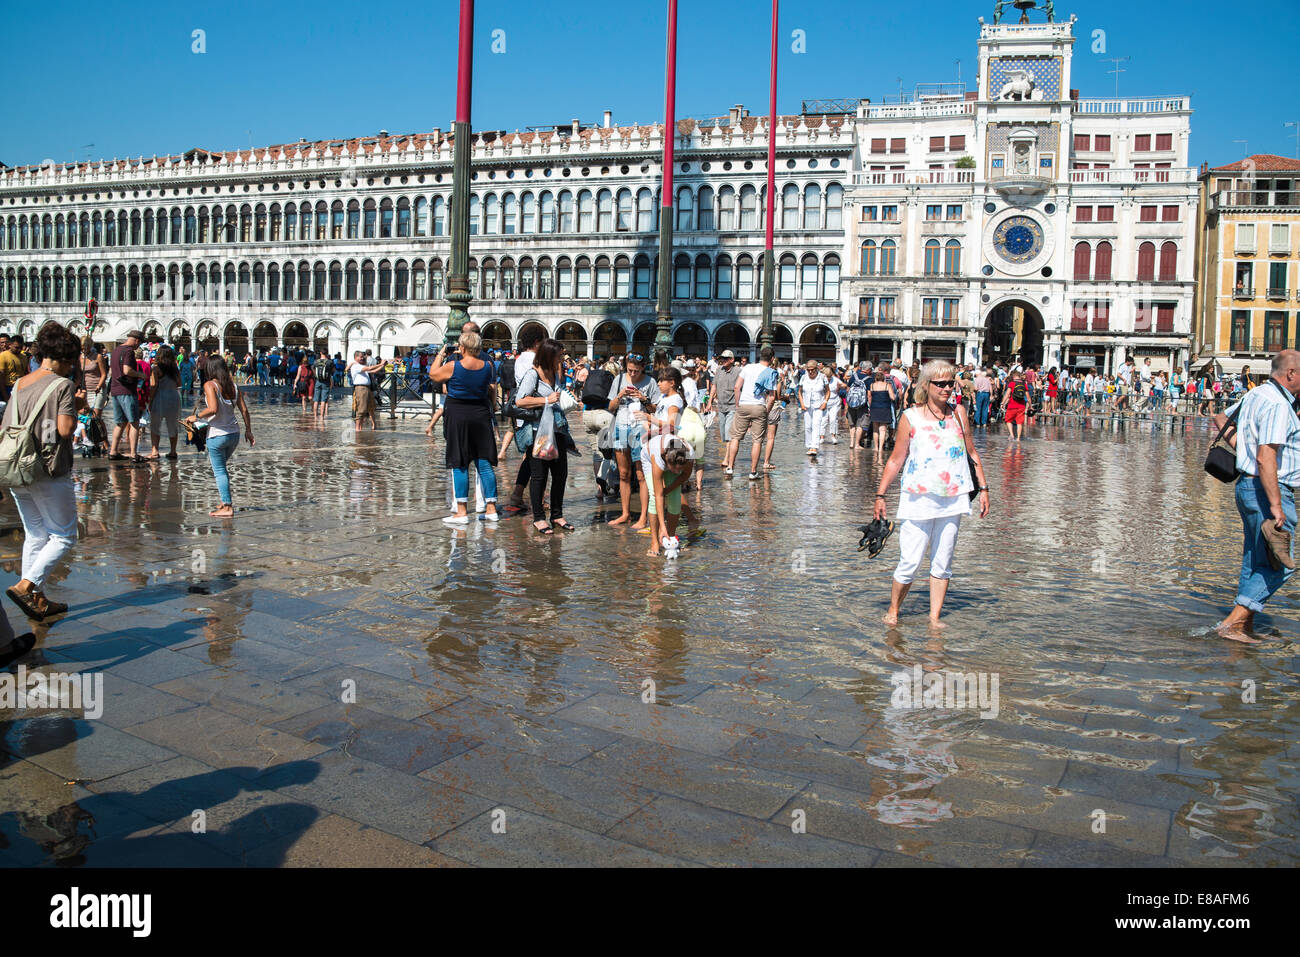 Marea Alta y luna llena causas Piazza San Marco para llenar con agua de mar Foto de stock